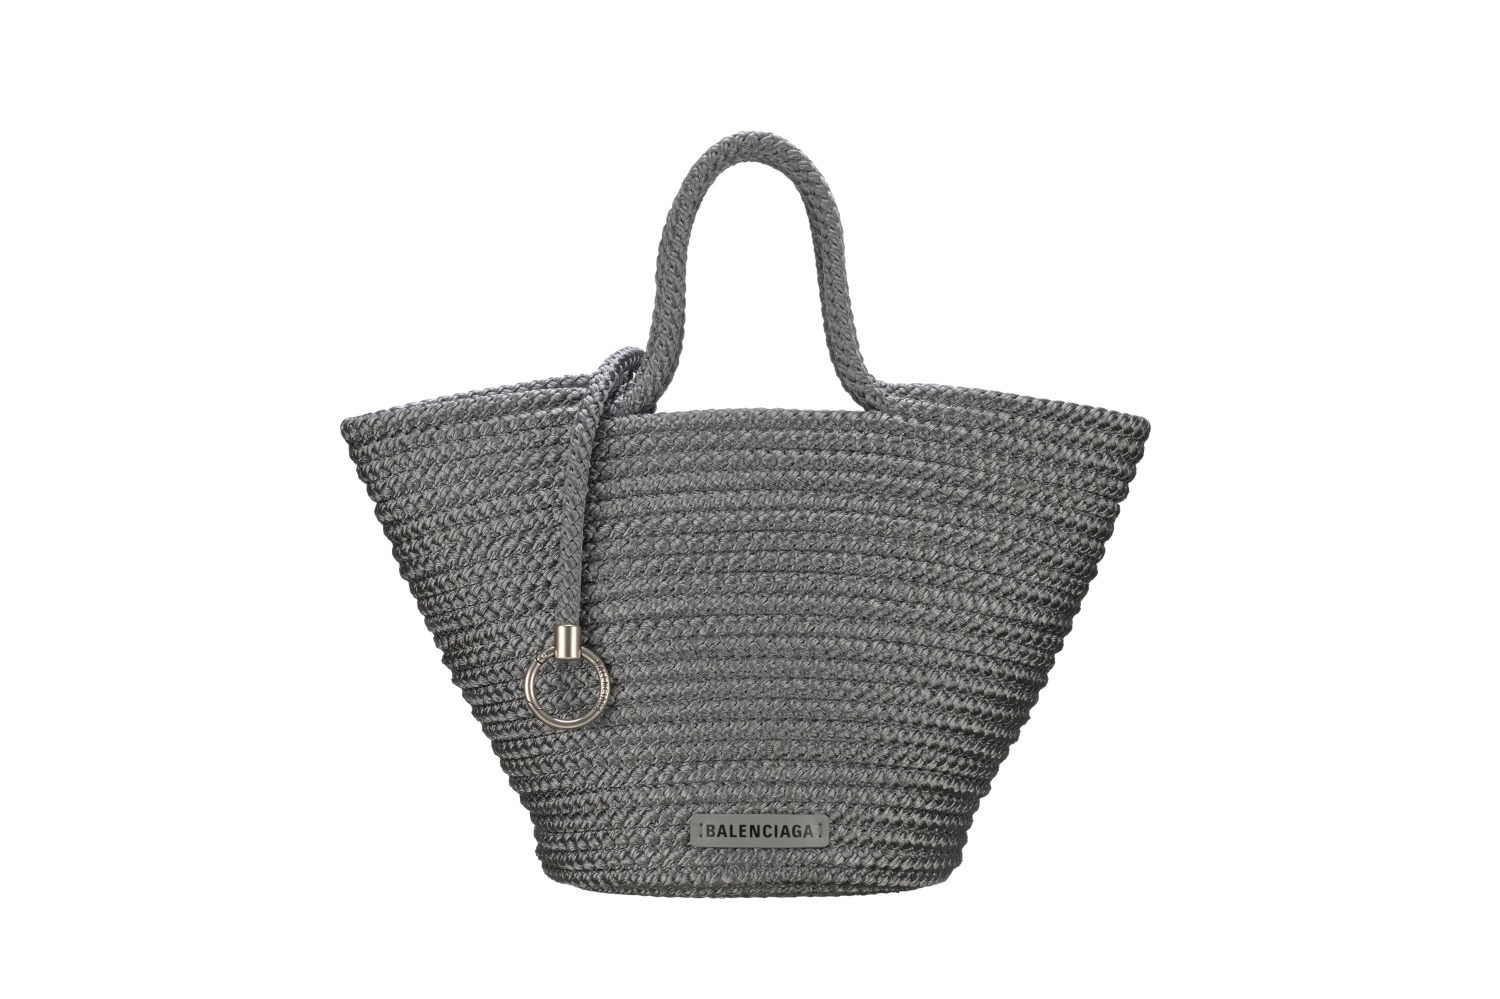 バレンシアガ“円錐型”バスケットバッグ「イビザ 」に、日本限定グレー